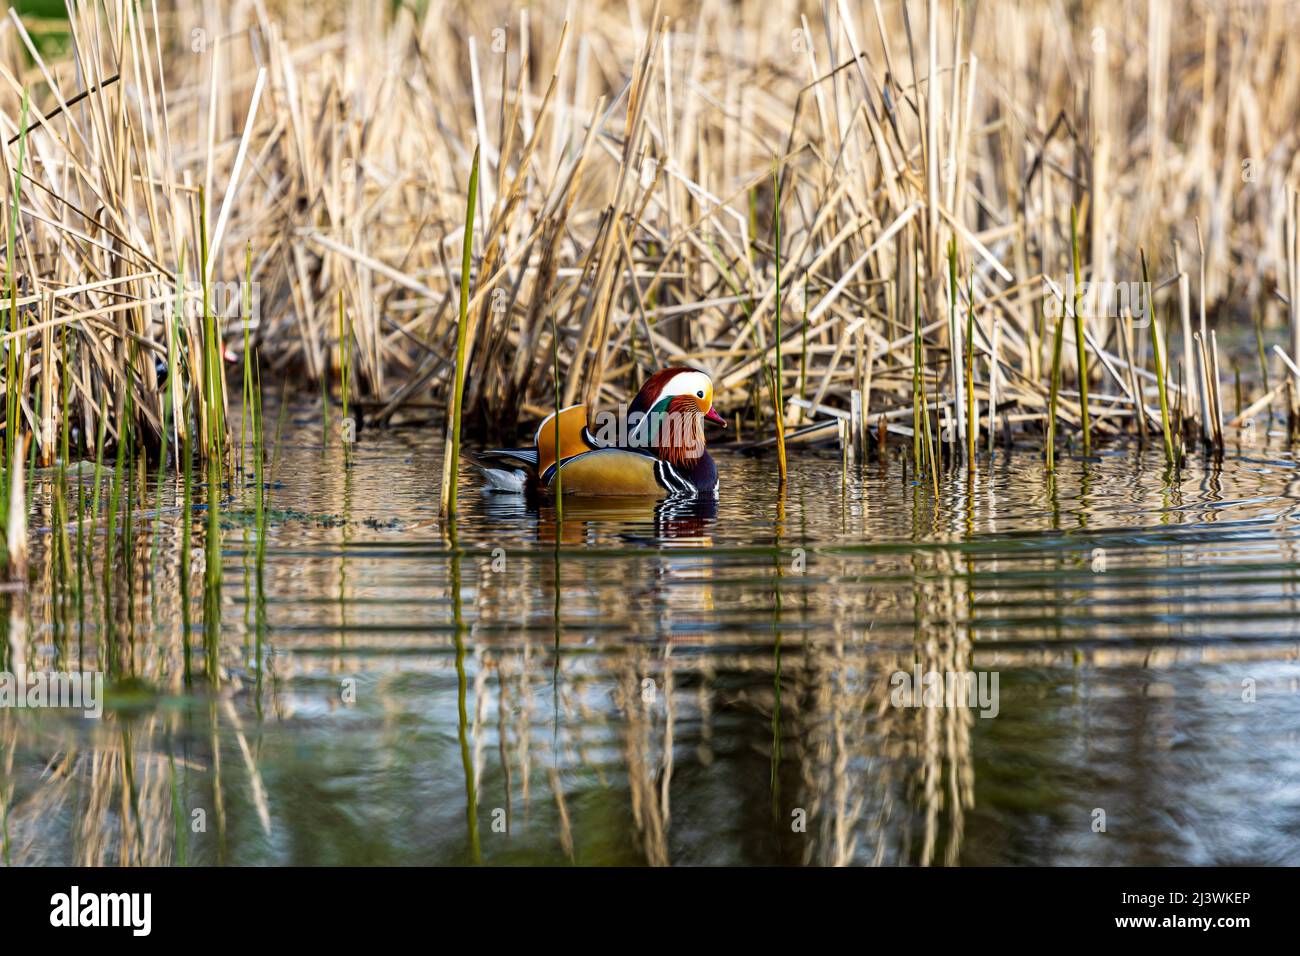 Rencontre étroite avec un canard mandarin mâle (Aix galericulata) sur un petit lac artificiel près de la ville de Timisoara, Roumanie. Photo prise le 9th avril Banque D'Images